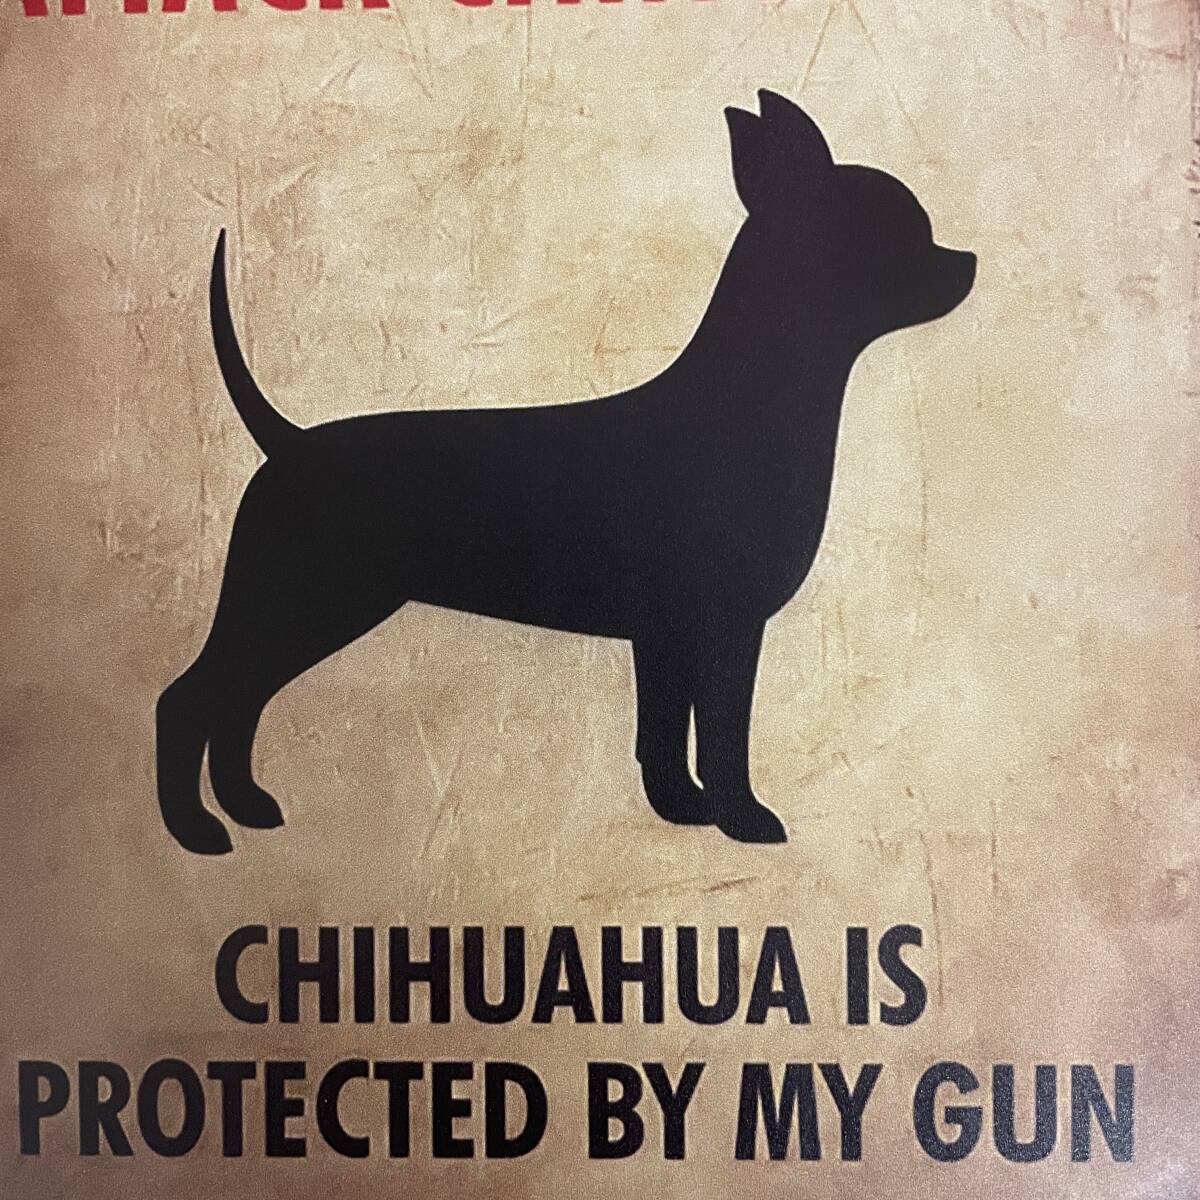 かわいい 警告版 ブリキ看板 財産はチワワに守られています 犬 いぬ イヌ 金属パネル 壁飾り インテリア 壁掛けプレート 防犯対策 おもしろ